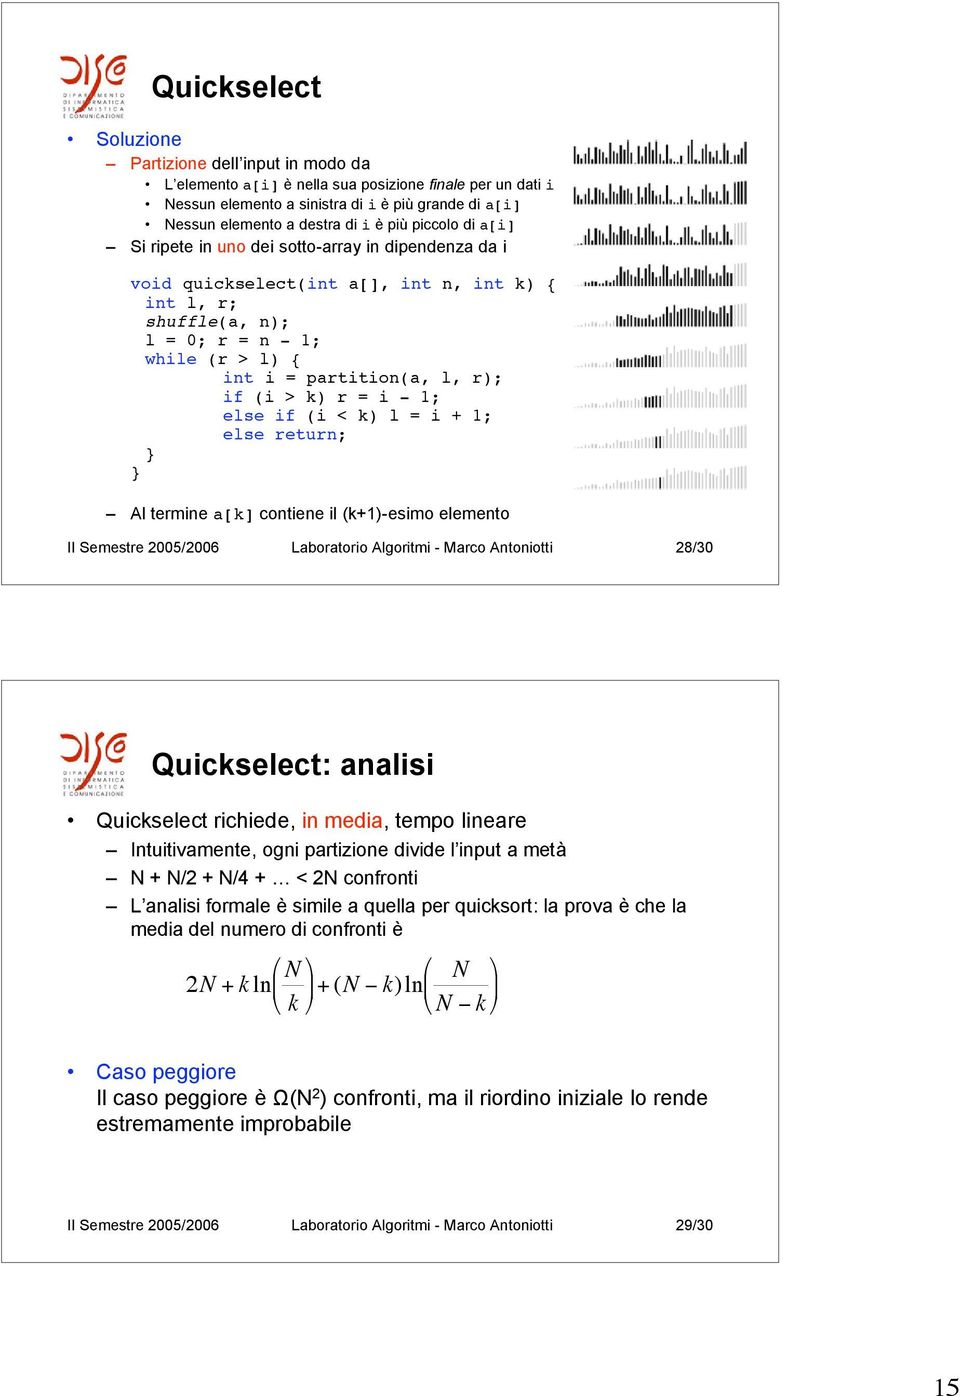 r); if (i > k) r = i - 1; else if (i < k) l = i + 1; else return; Al termine a[k] contiene il (k+1)-esimo elemento II Semestre 2005/2006 Laboratorio Algoritmi - Marco Antoniotti 28/30 Quickselect: